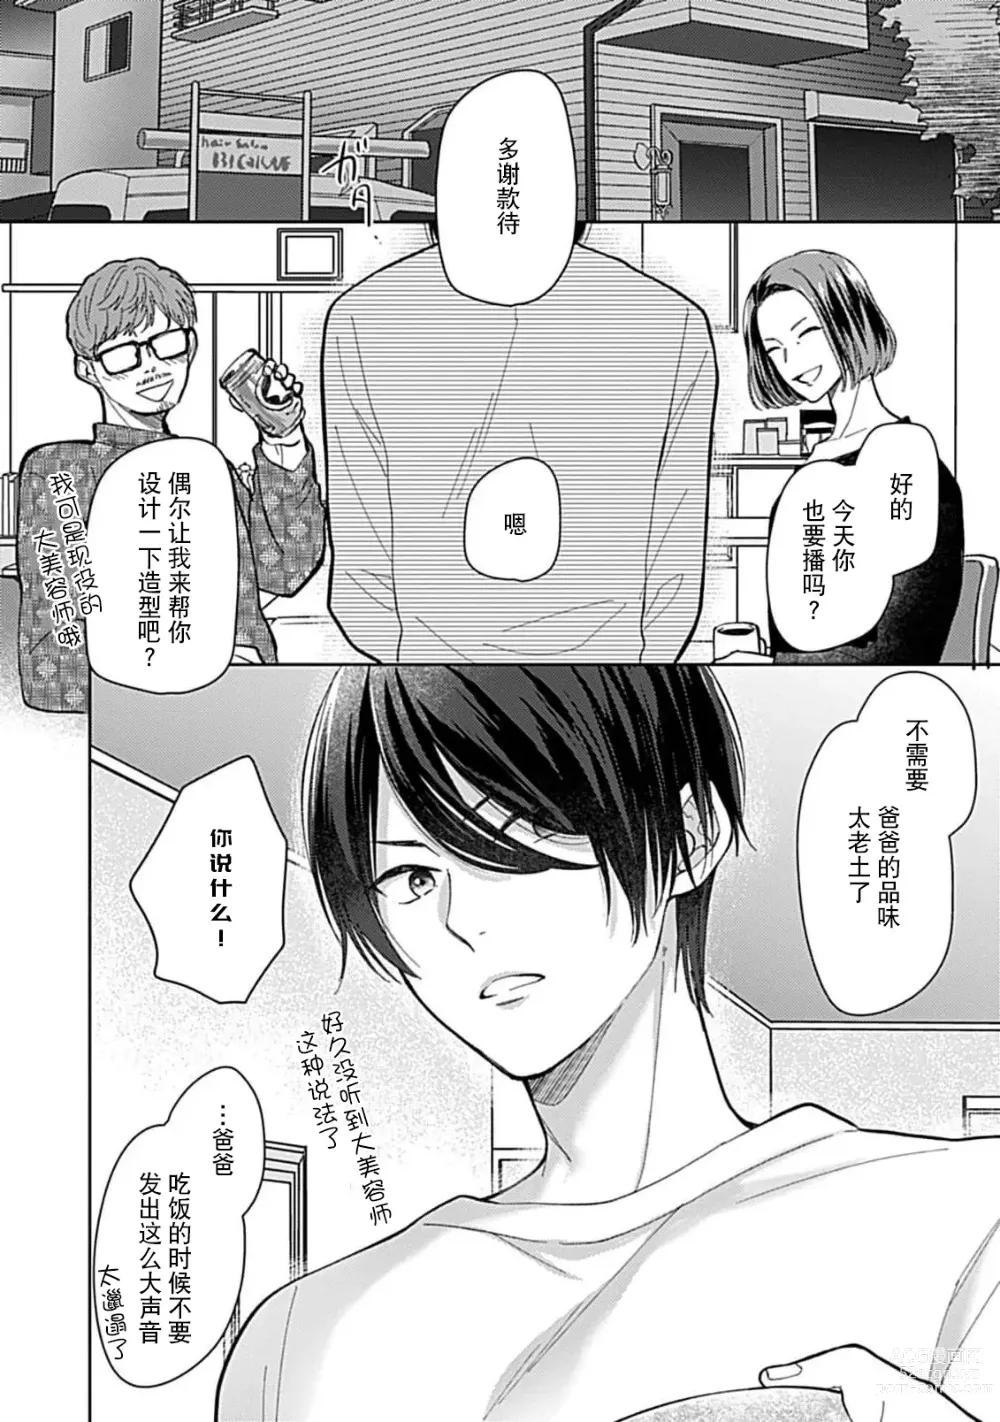 Page 4 of manga 恋情与秘密难以映照 1